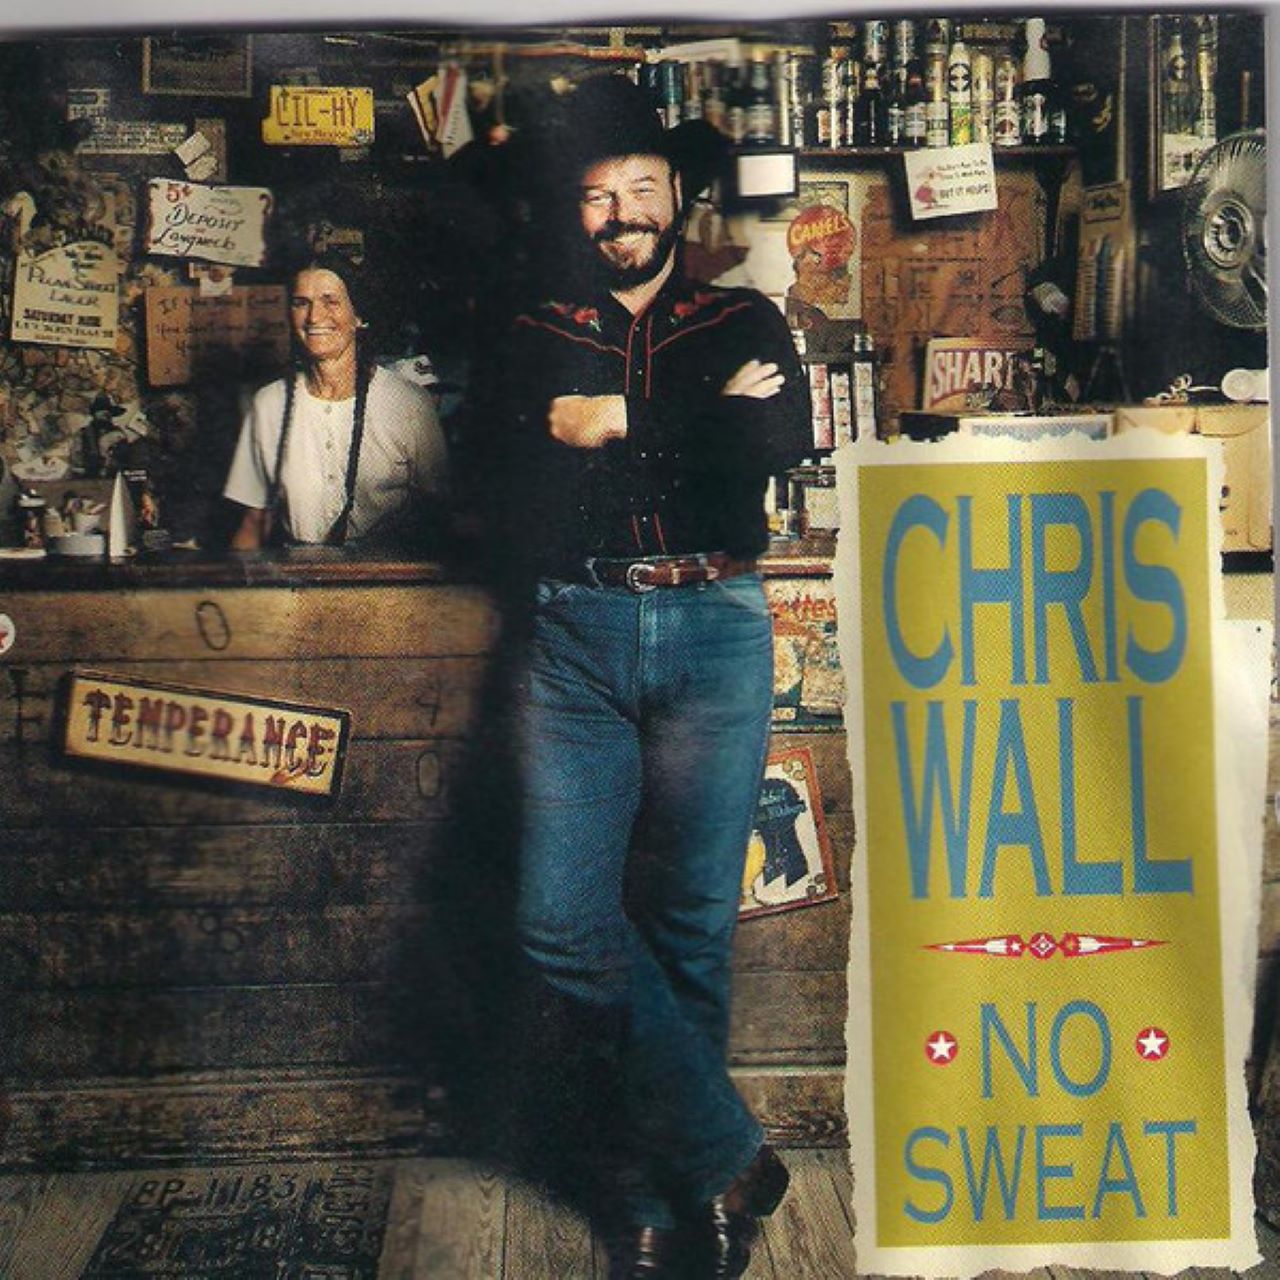 Chris Wall - No Sweat cover album